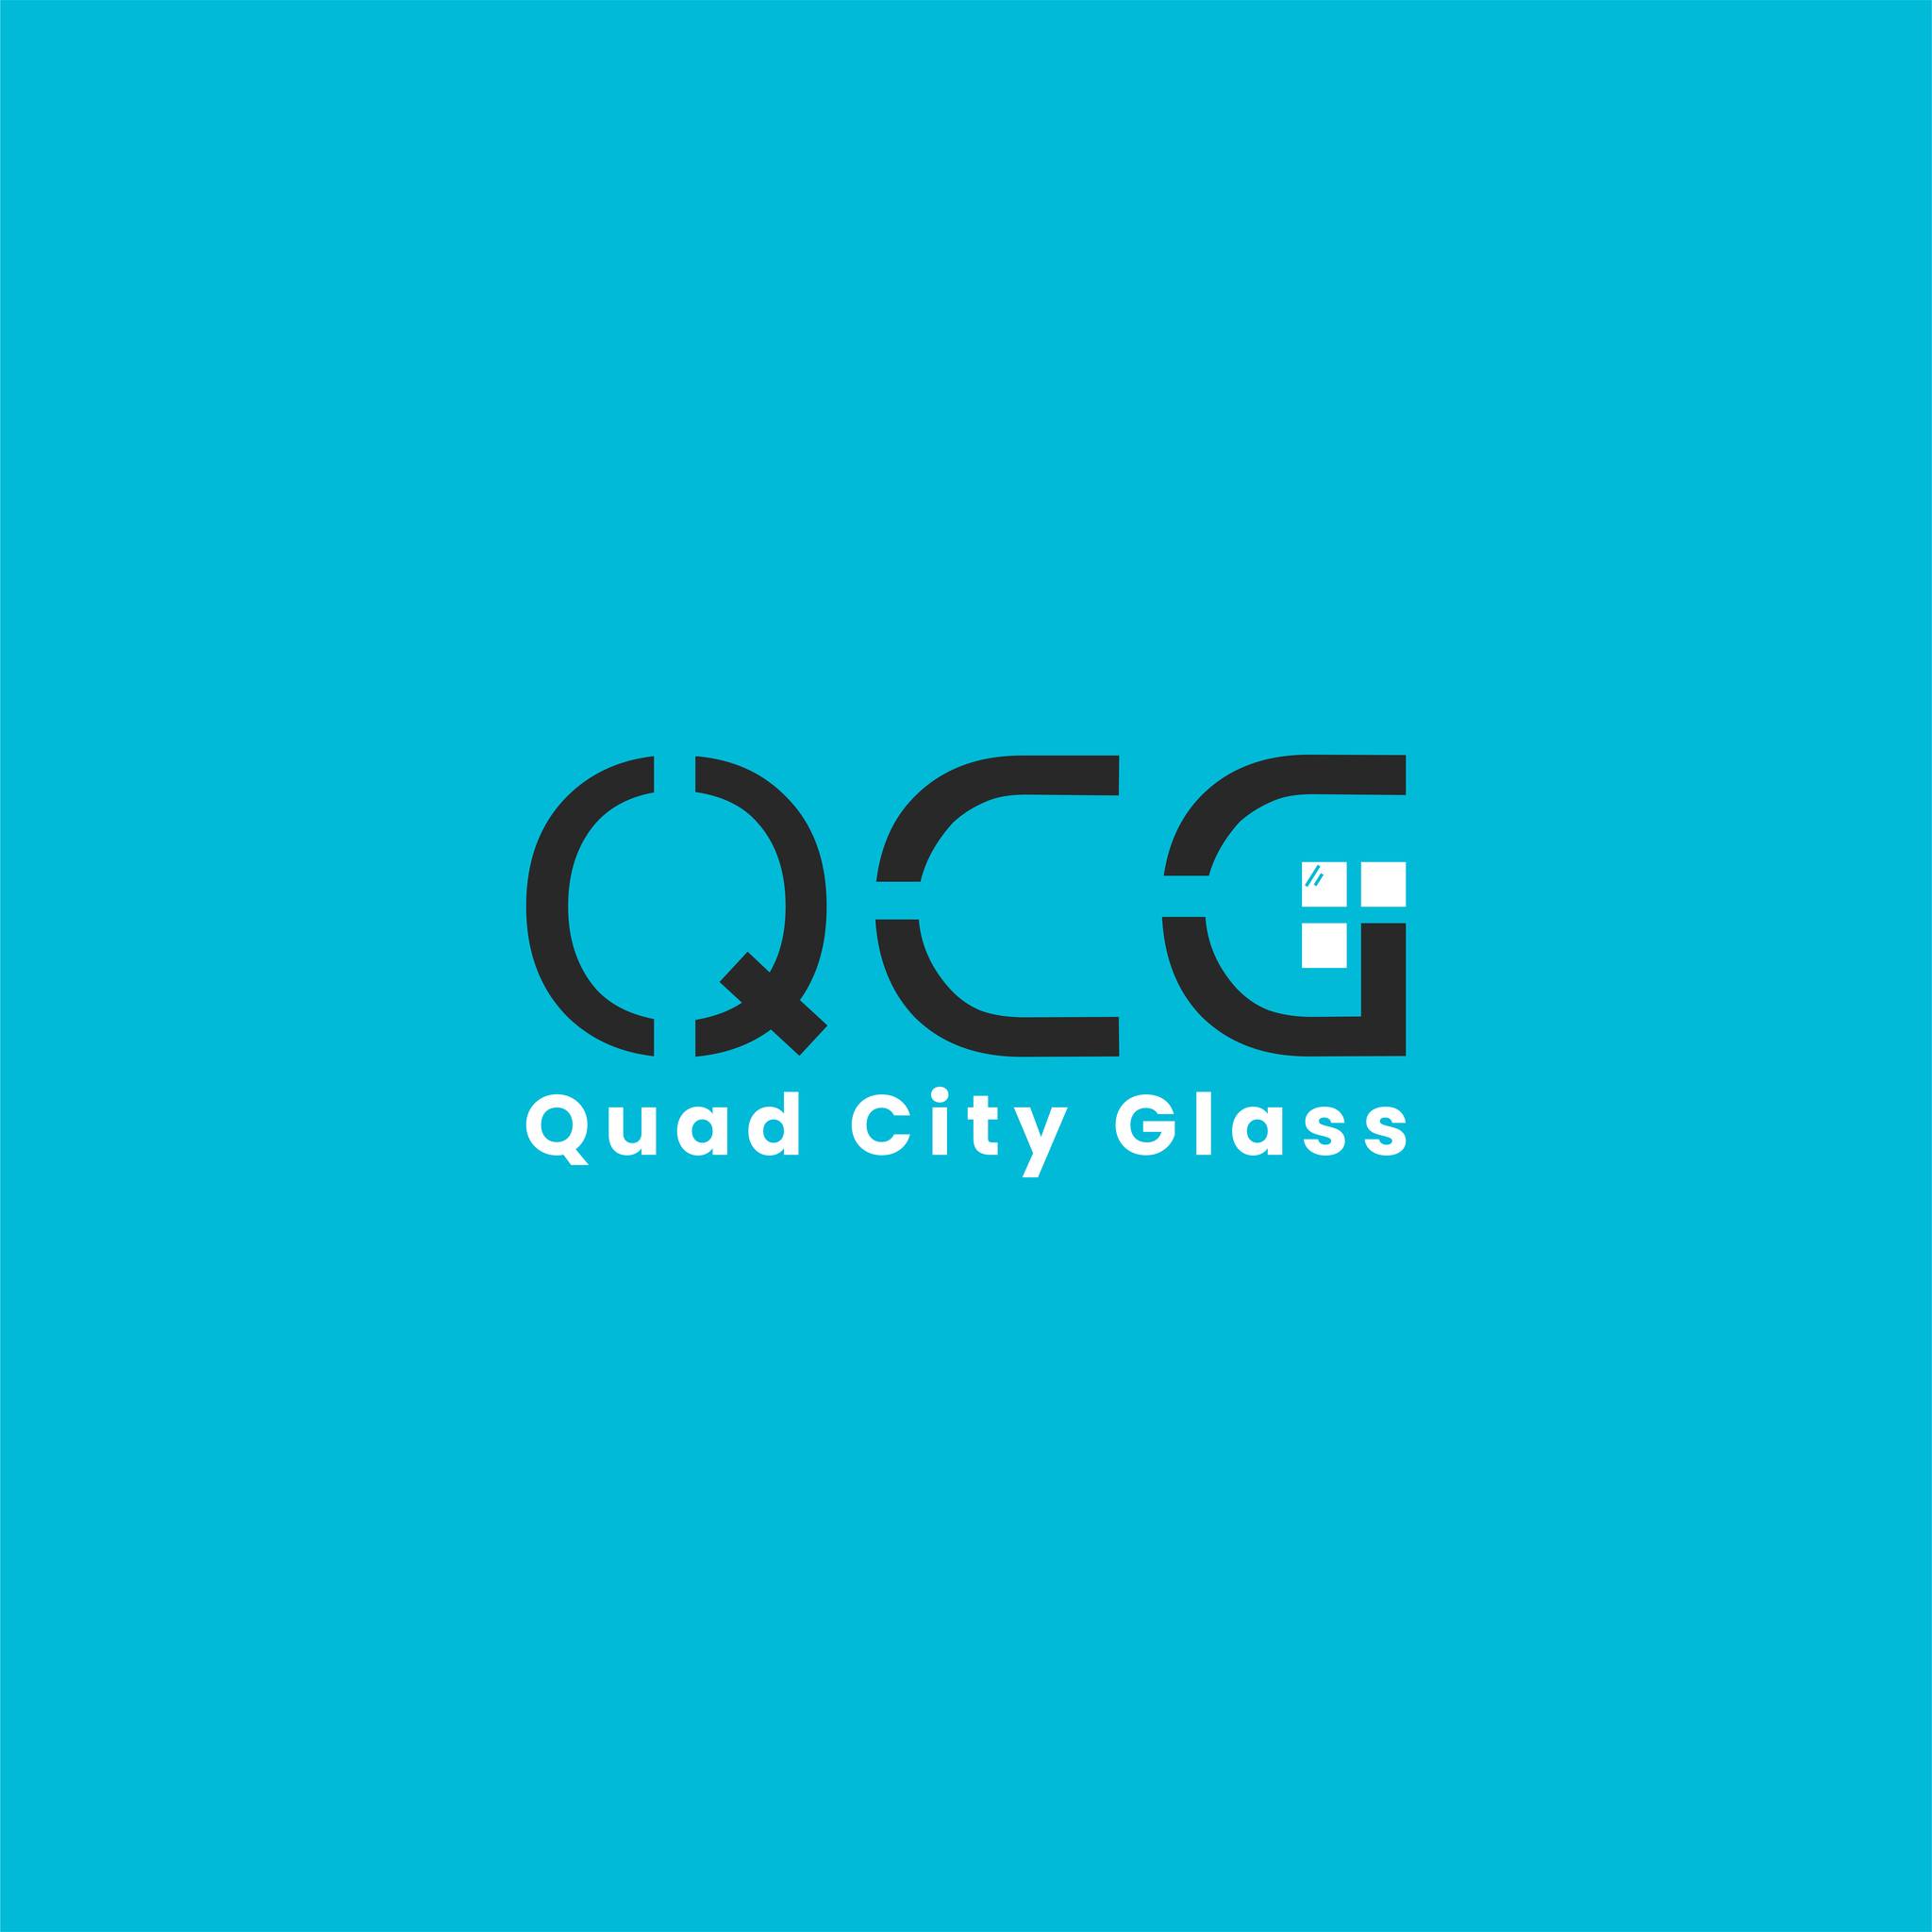 Quad City Glass